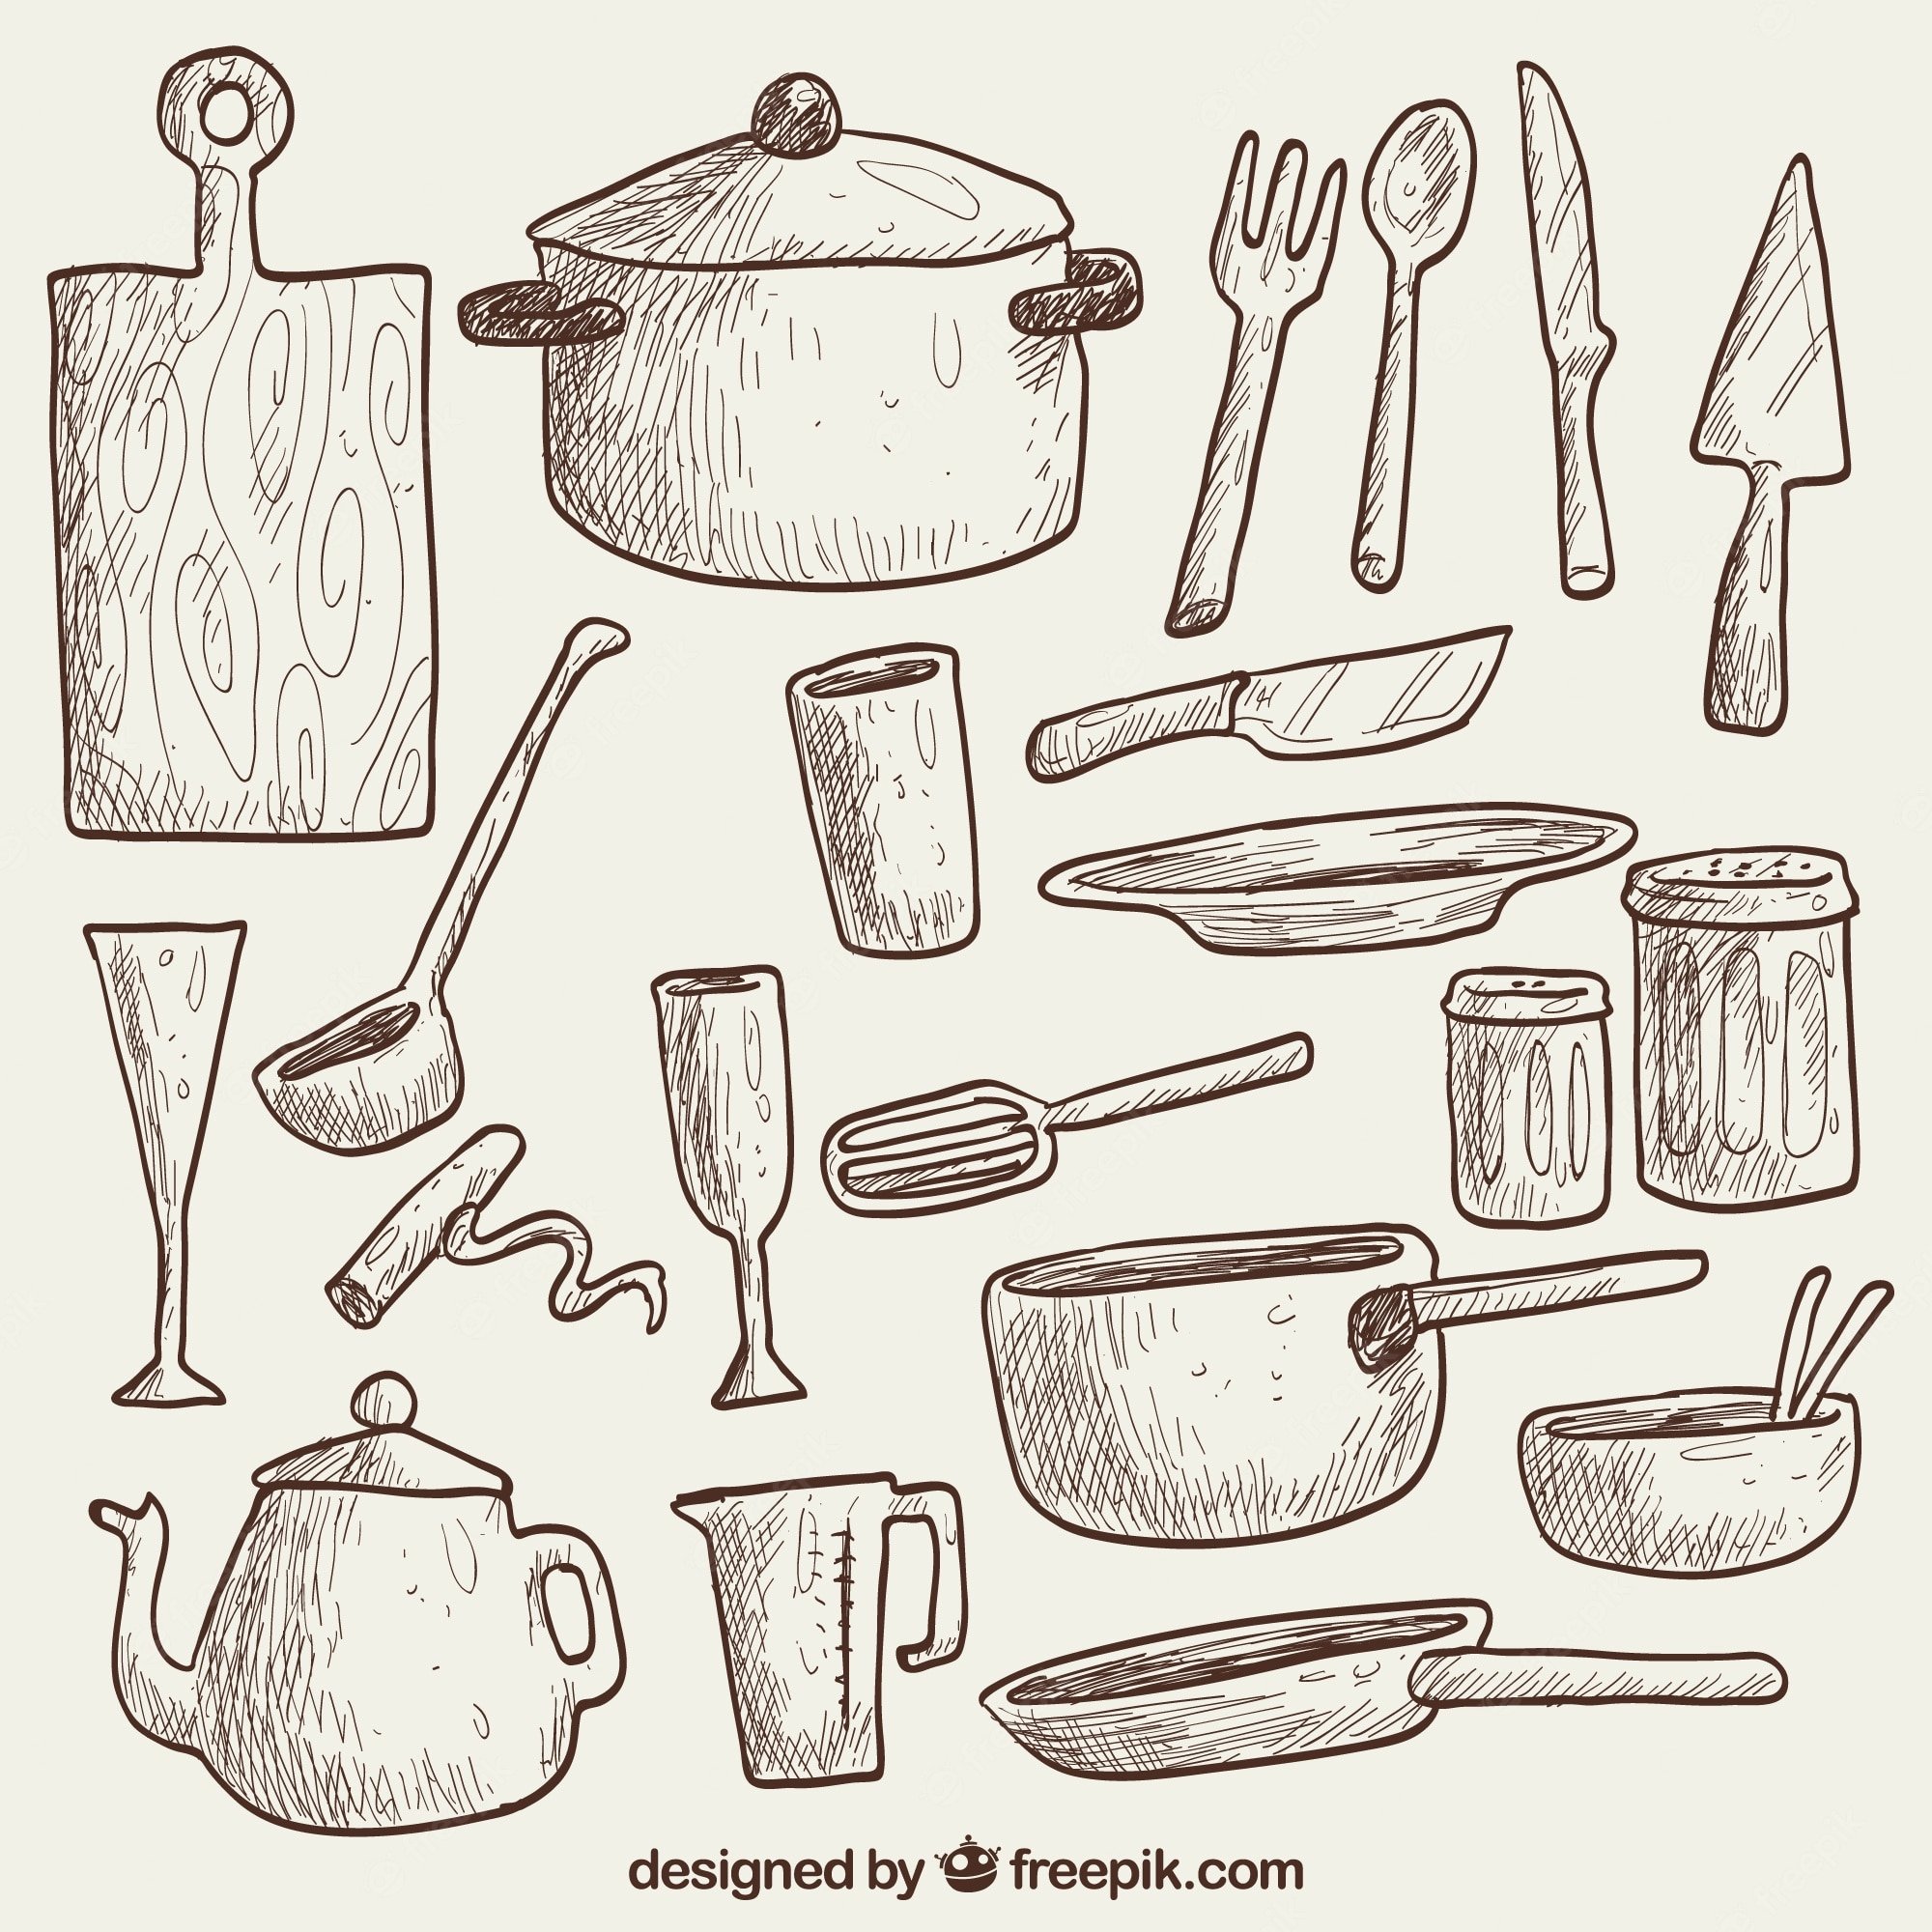 Изобразить предмет быта. Кухонная утварь рисунок. Кухонные принадлежности карандашом. Рисование кухонной посуды. Наброски кухонной утвари.